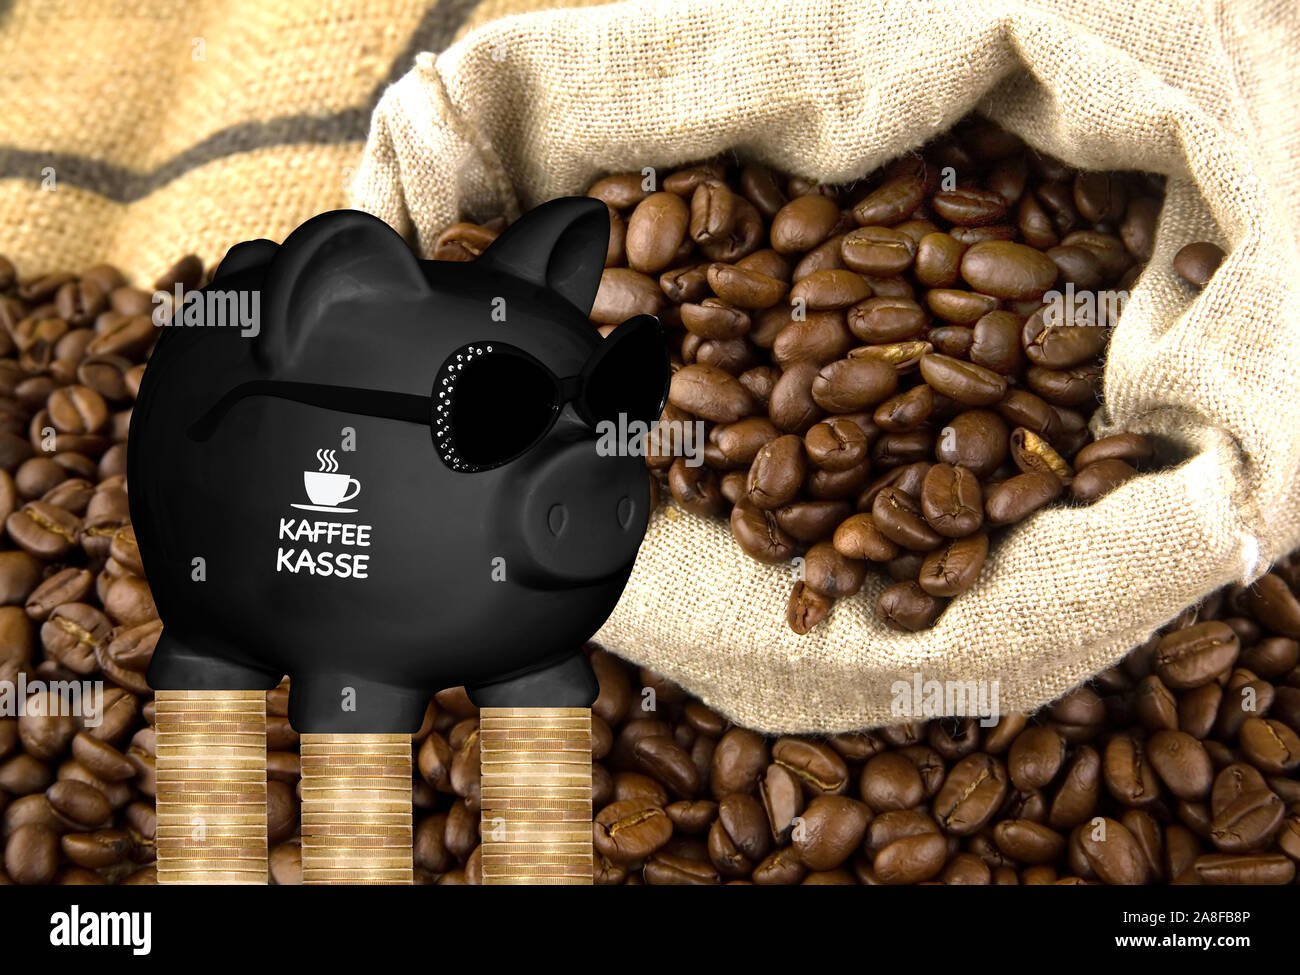 Sparschwein, Sparen, Vorsorge, Aufdruck : Kaffeekasse, Kaffeebohnen, part, Kaffeesack, Banque D'Images